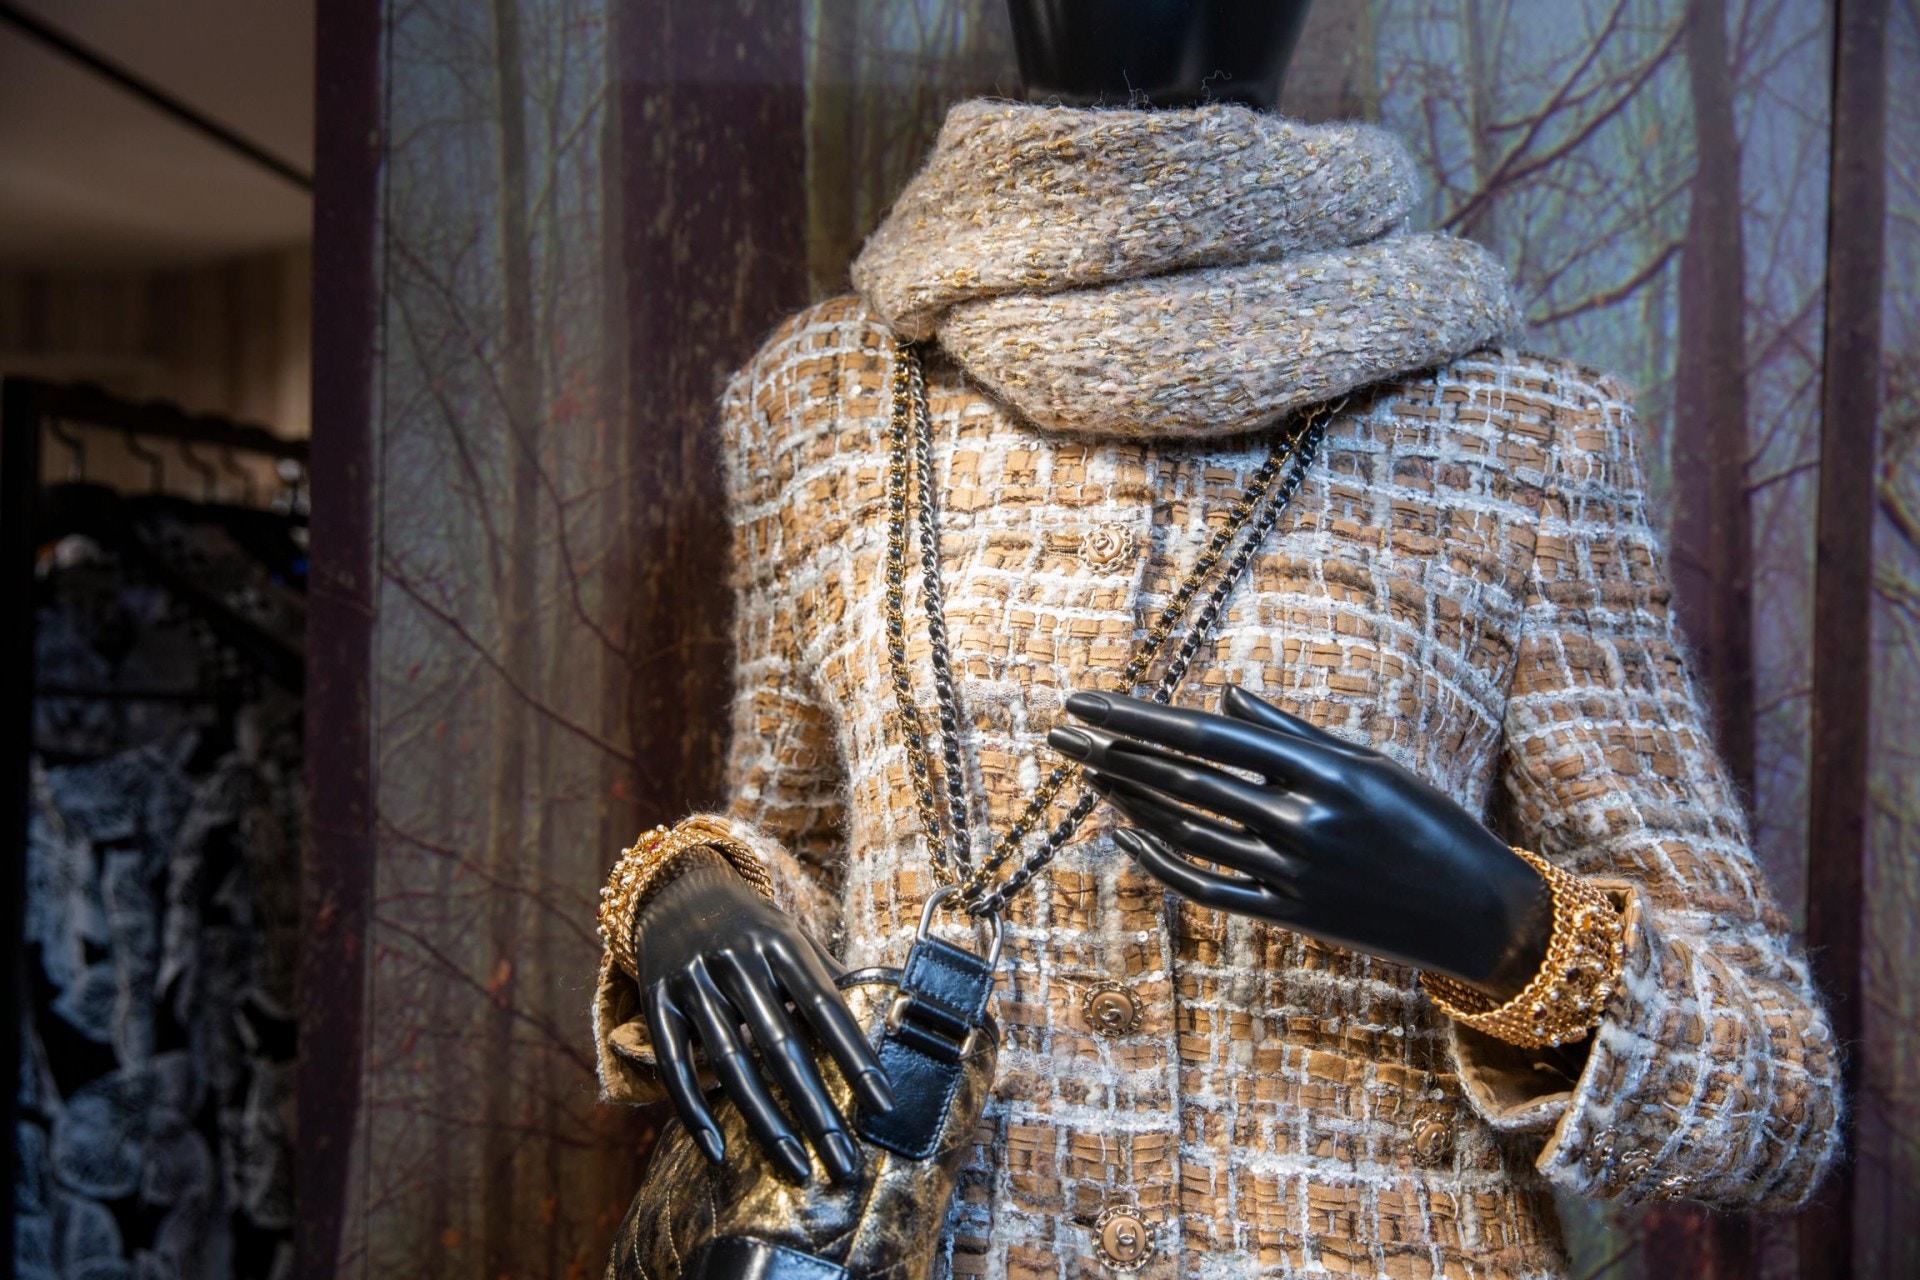 「結霜」Lesage Tweed在淺啡色的布料帶有絲絲雪白的紋路以及珠片，彷如冬天樹木上的雪霜，一片片凝固的雪花反射出點點白光。